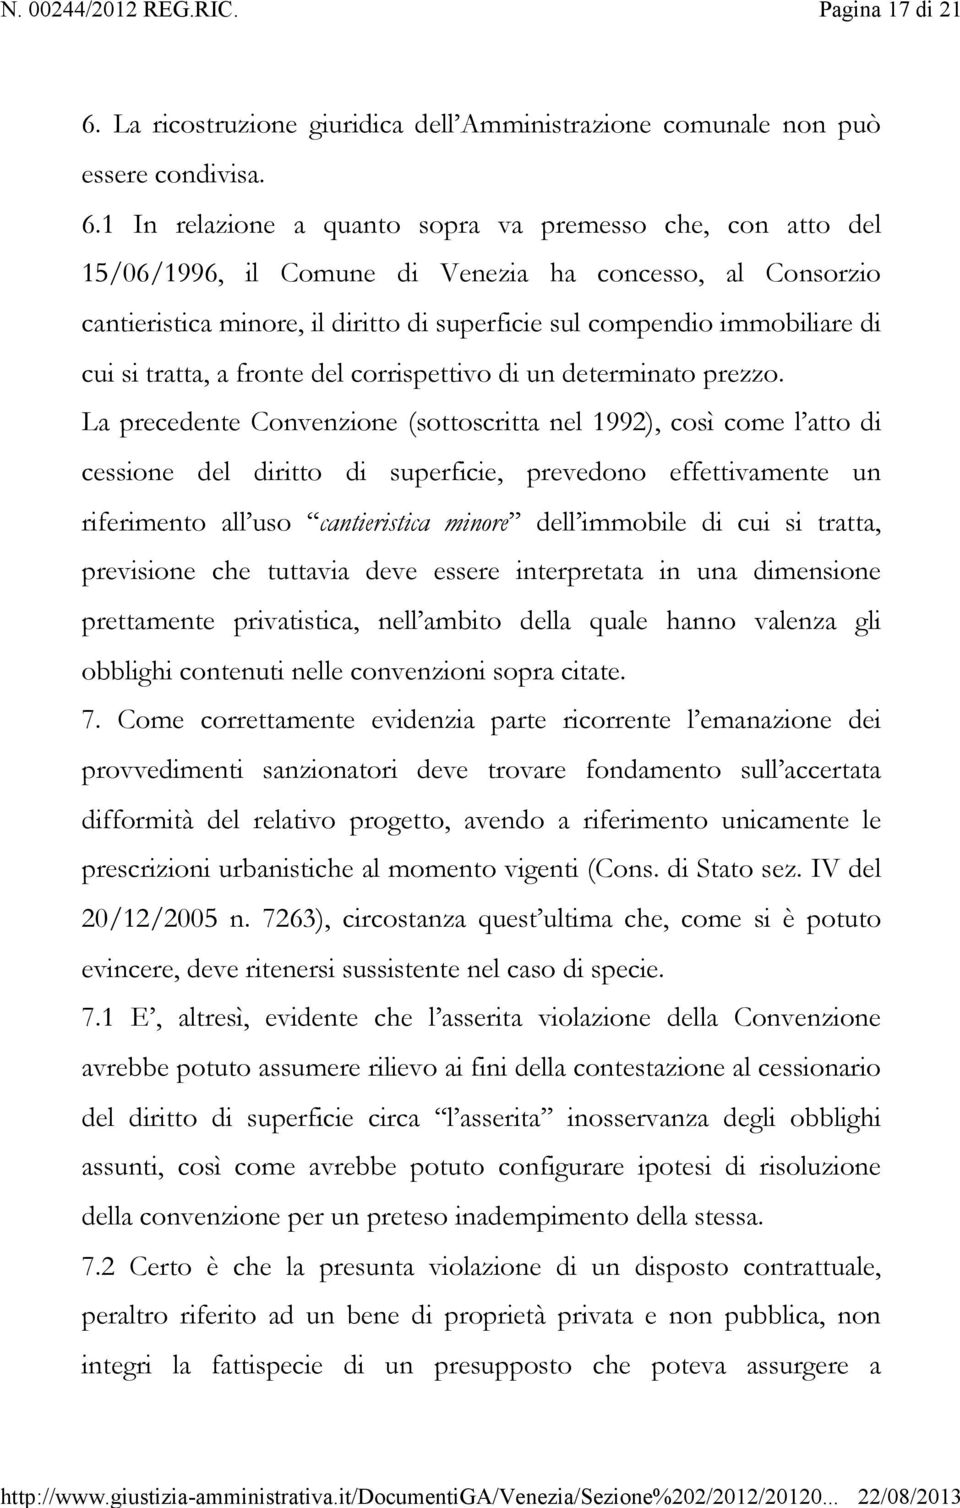 1 In relazione a quanto sopra va premesso che, con atto del 15/06/1996, il Comune di Venezia ha concesso, al Consorzio cantieristica minore, il diritto di superficie sul compendio immobiliare di cui